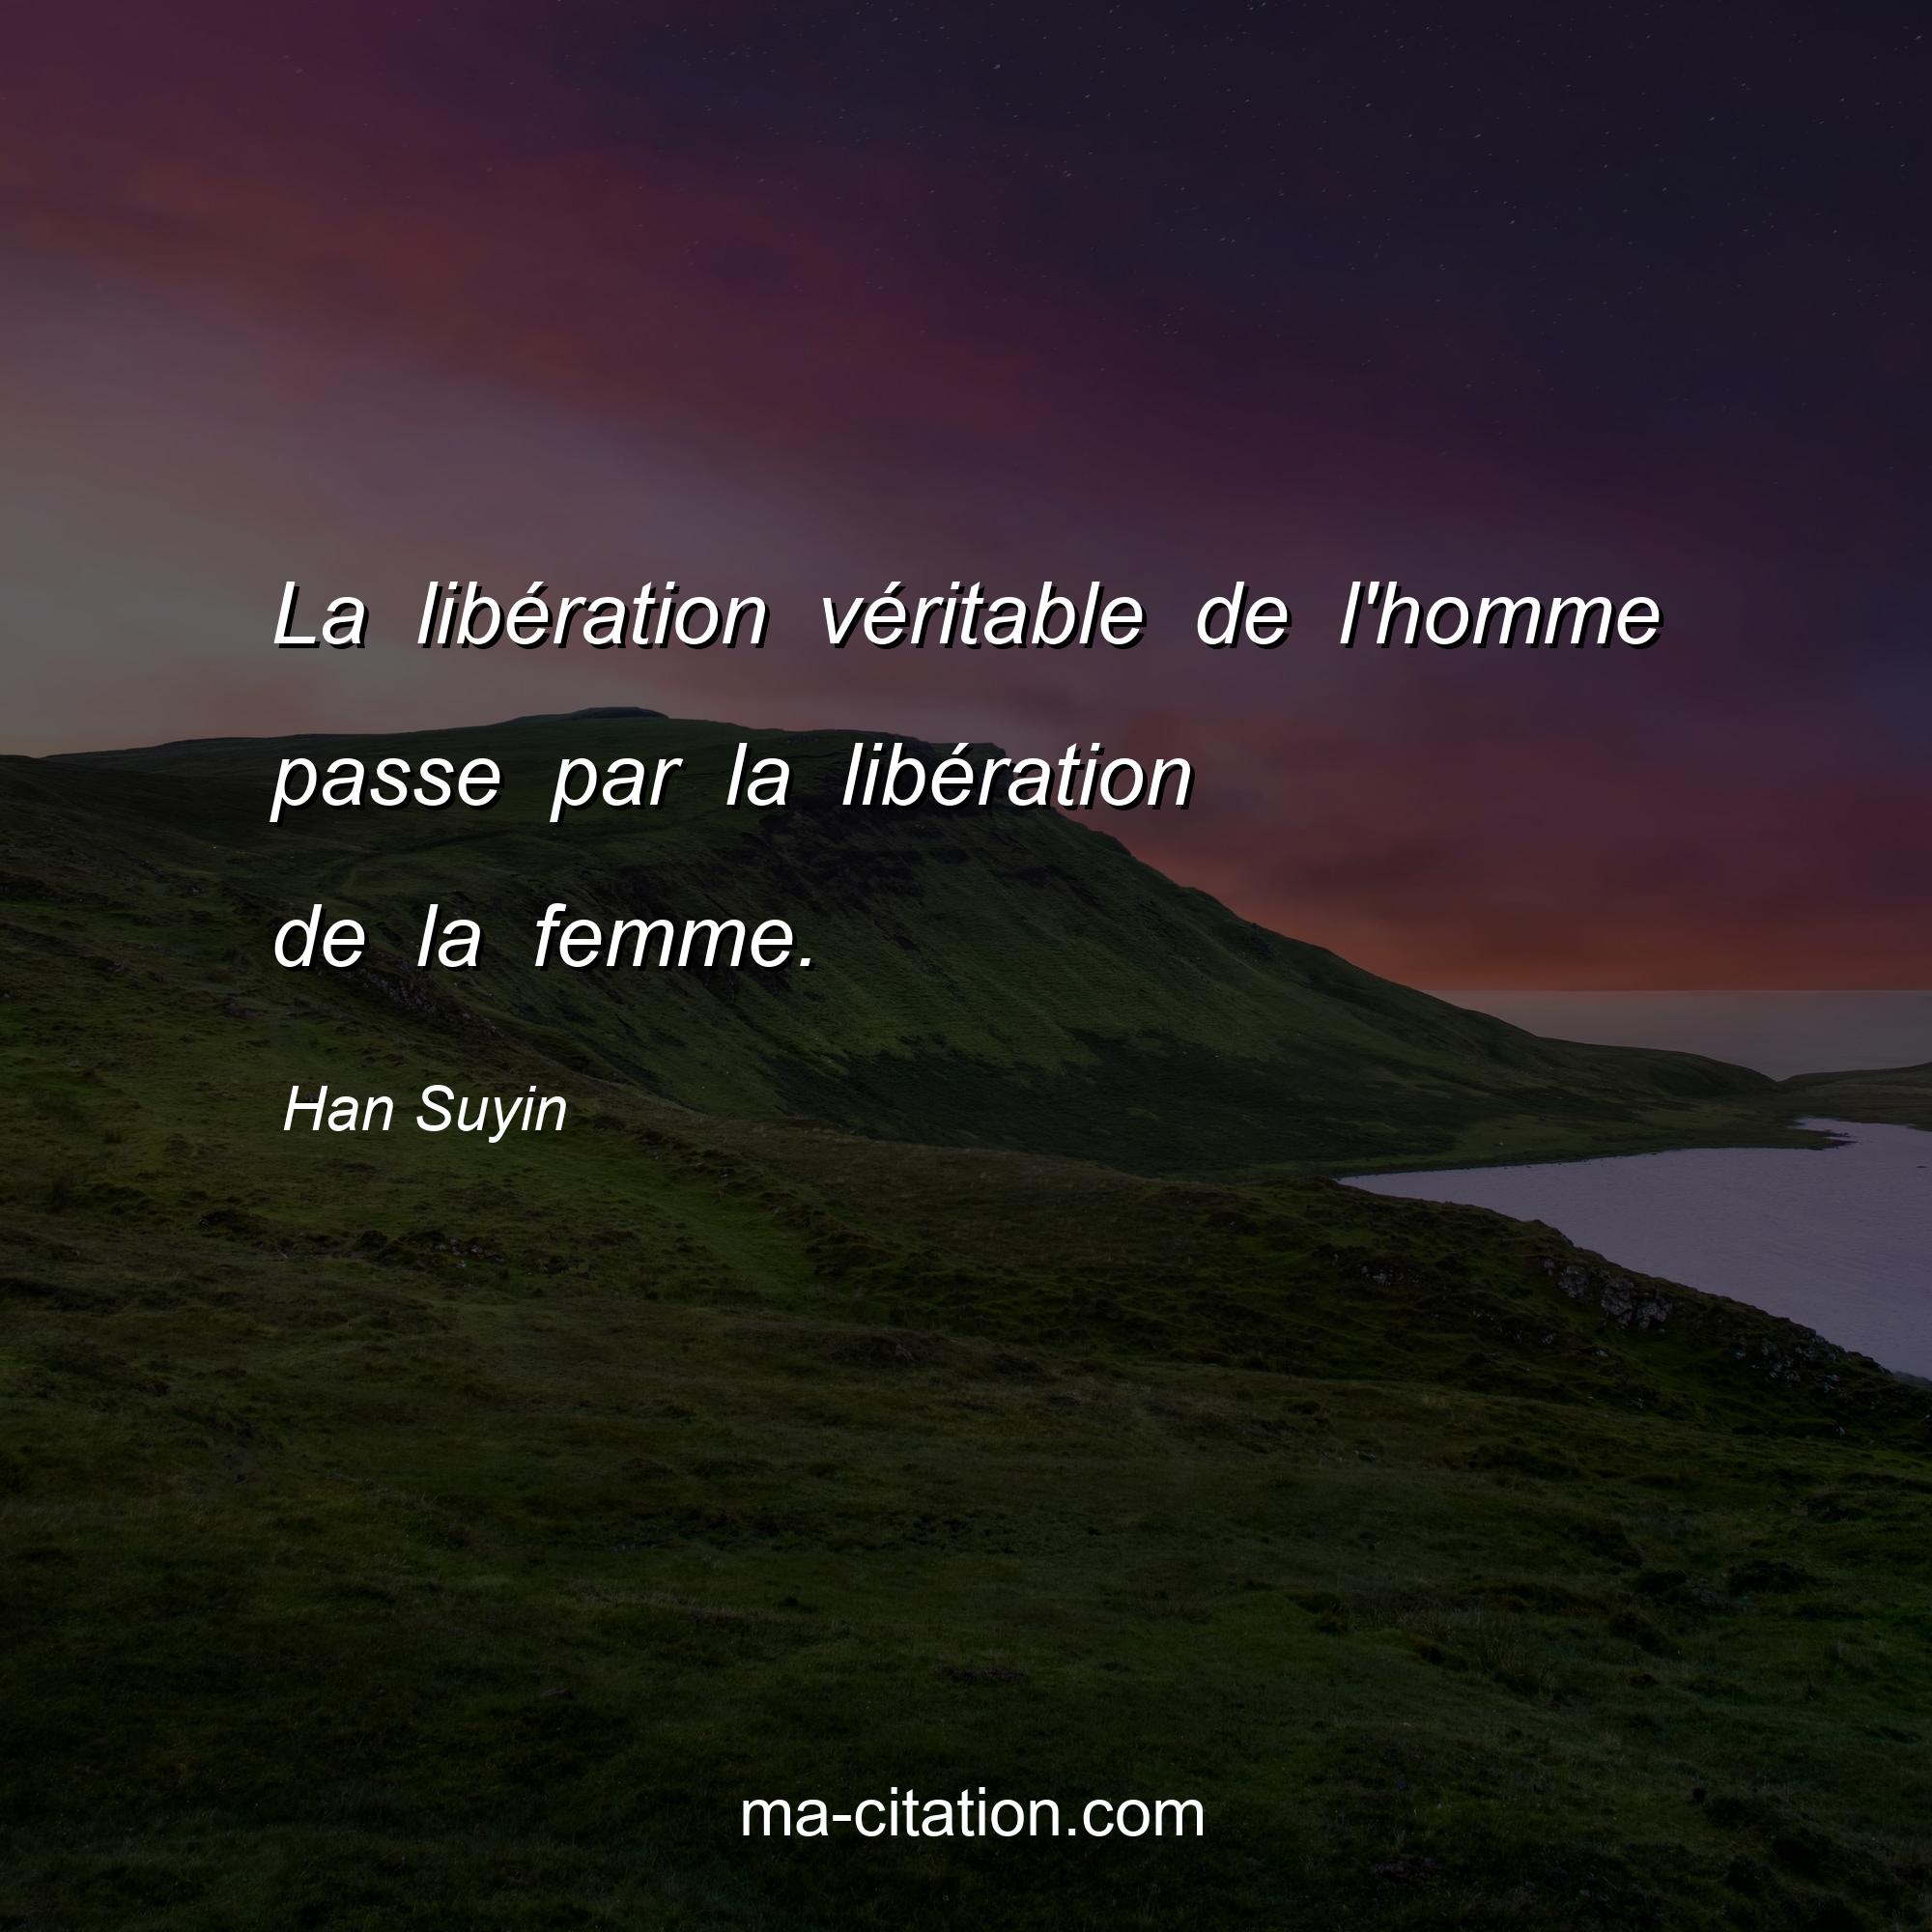 Han Suyin : La libération véritable de l'homme passe par la libération de la femme.